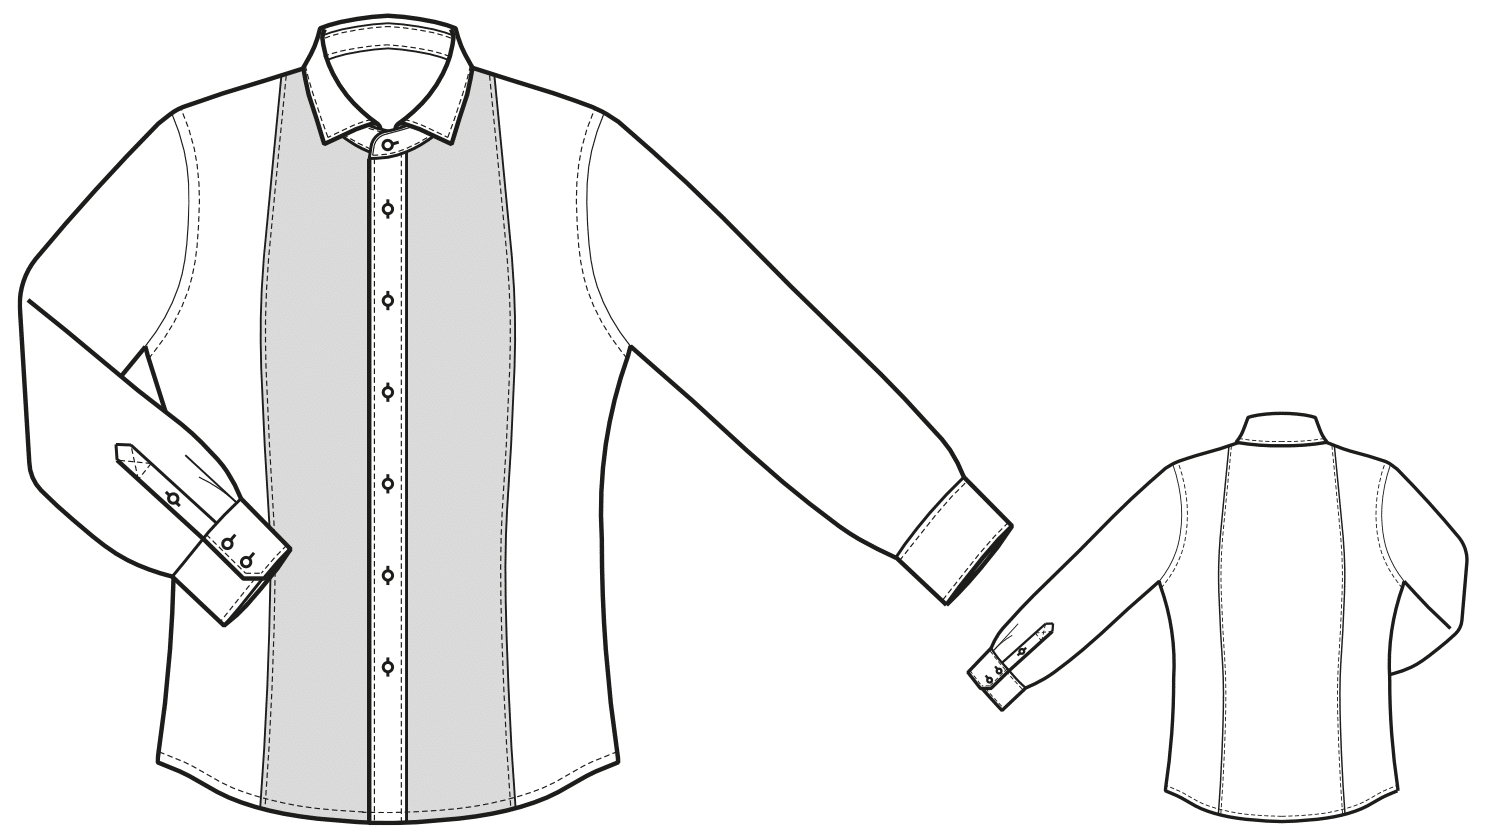 Die Abbildung zeigt die technische Zeichnung eines Hemdes.